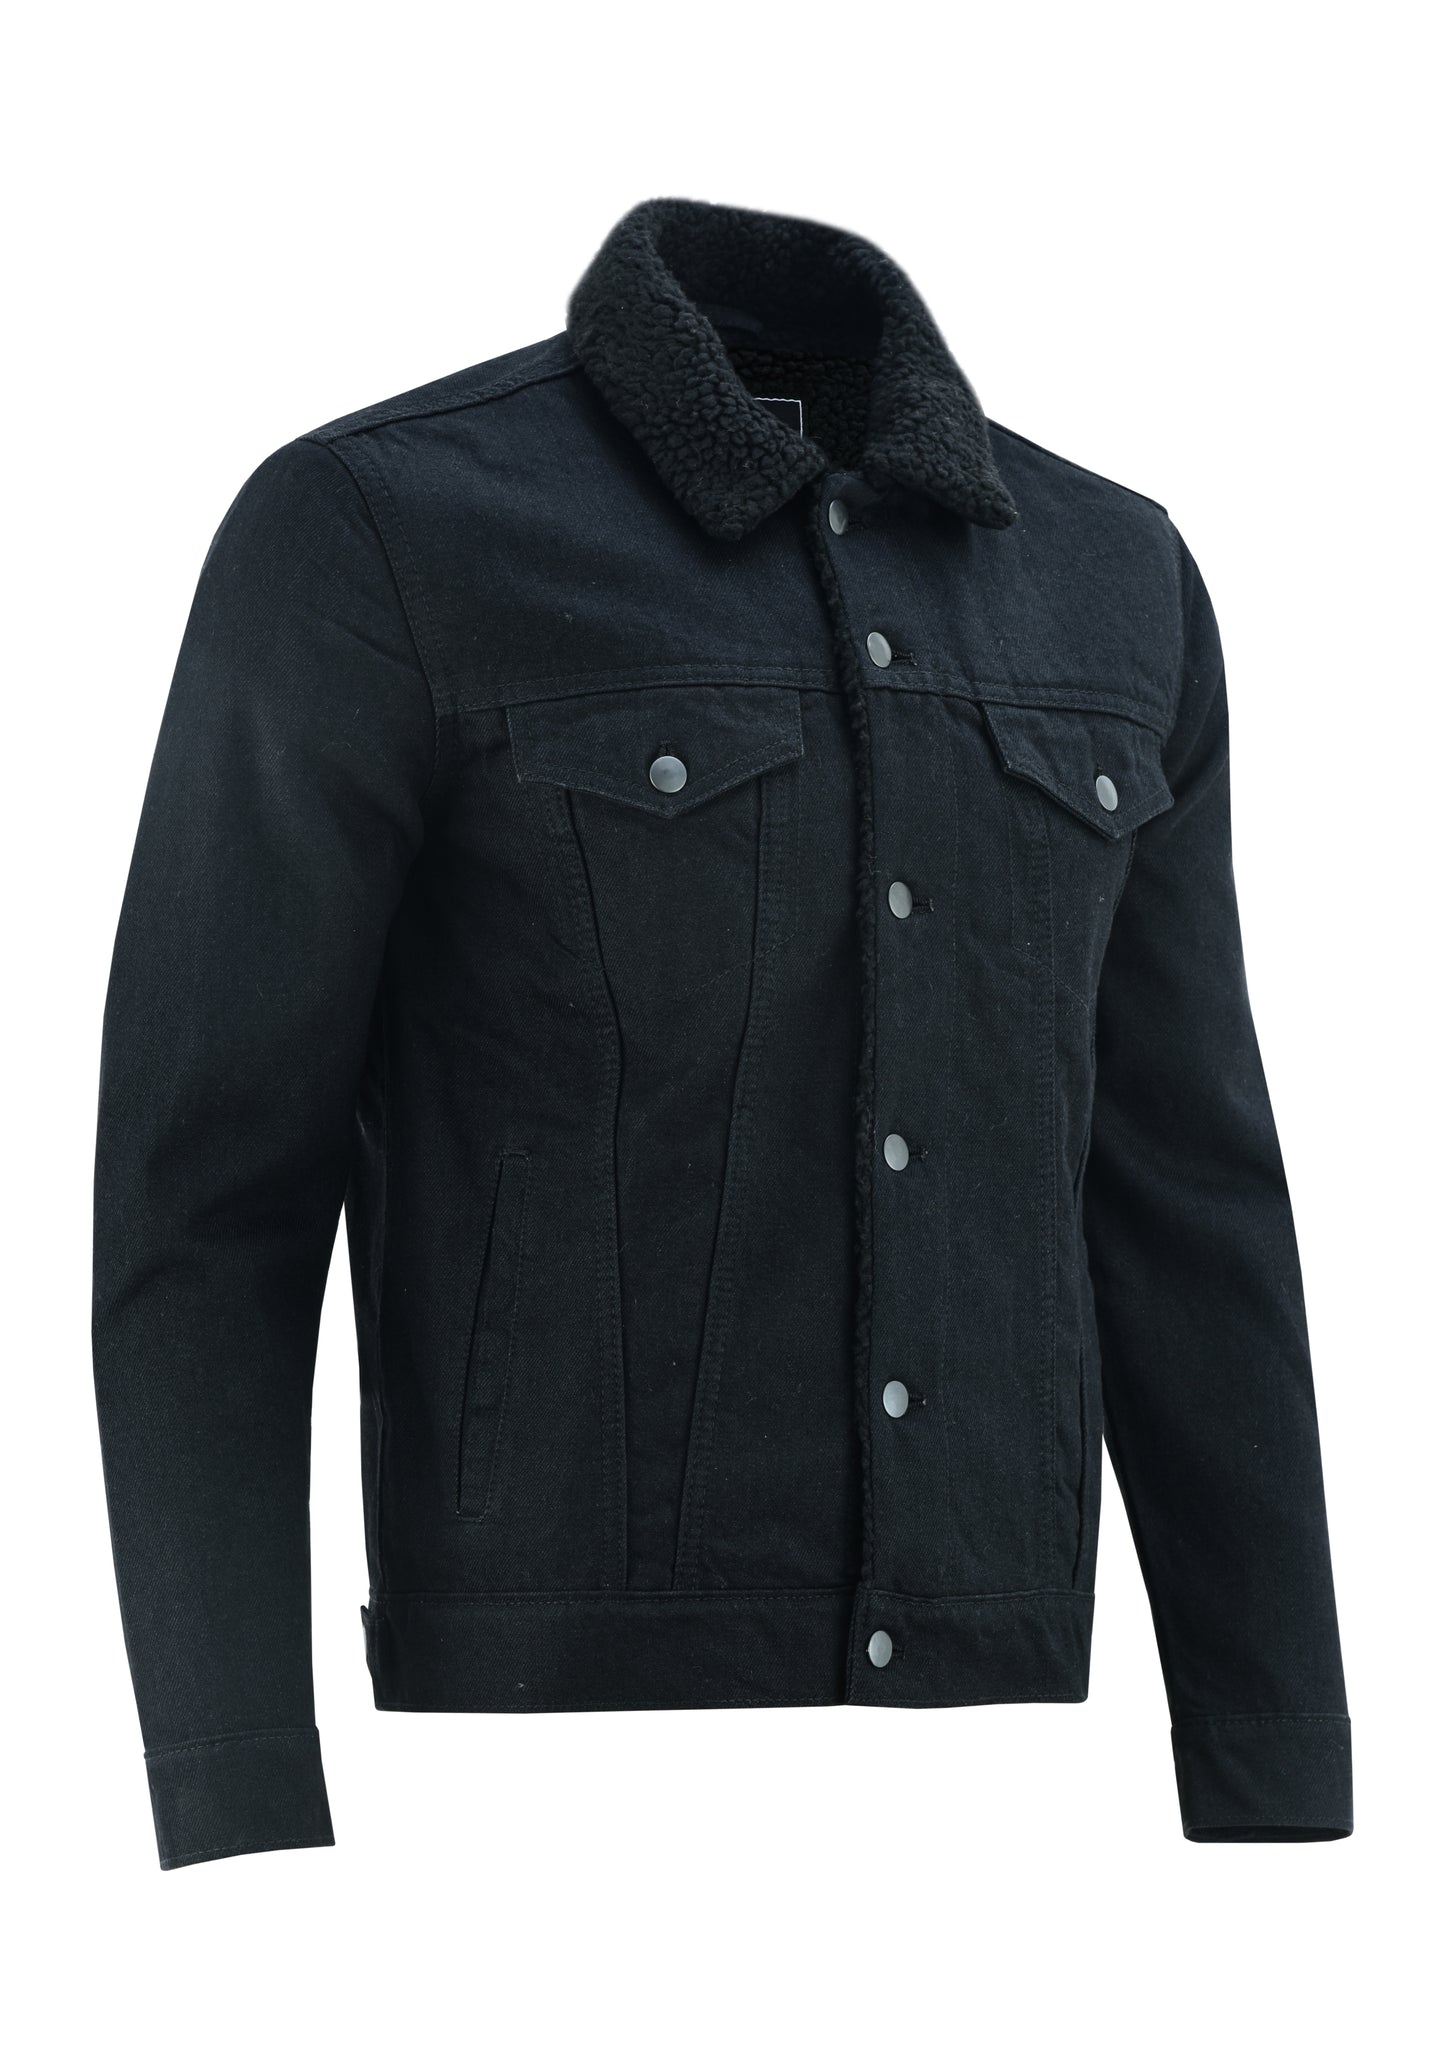 KS103 Black Denim Fur Jackets Hip-hop Style  Kanvos Sports